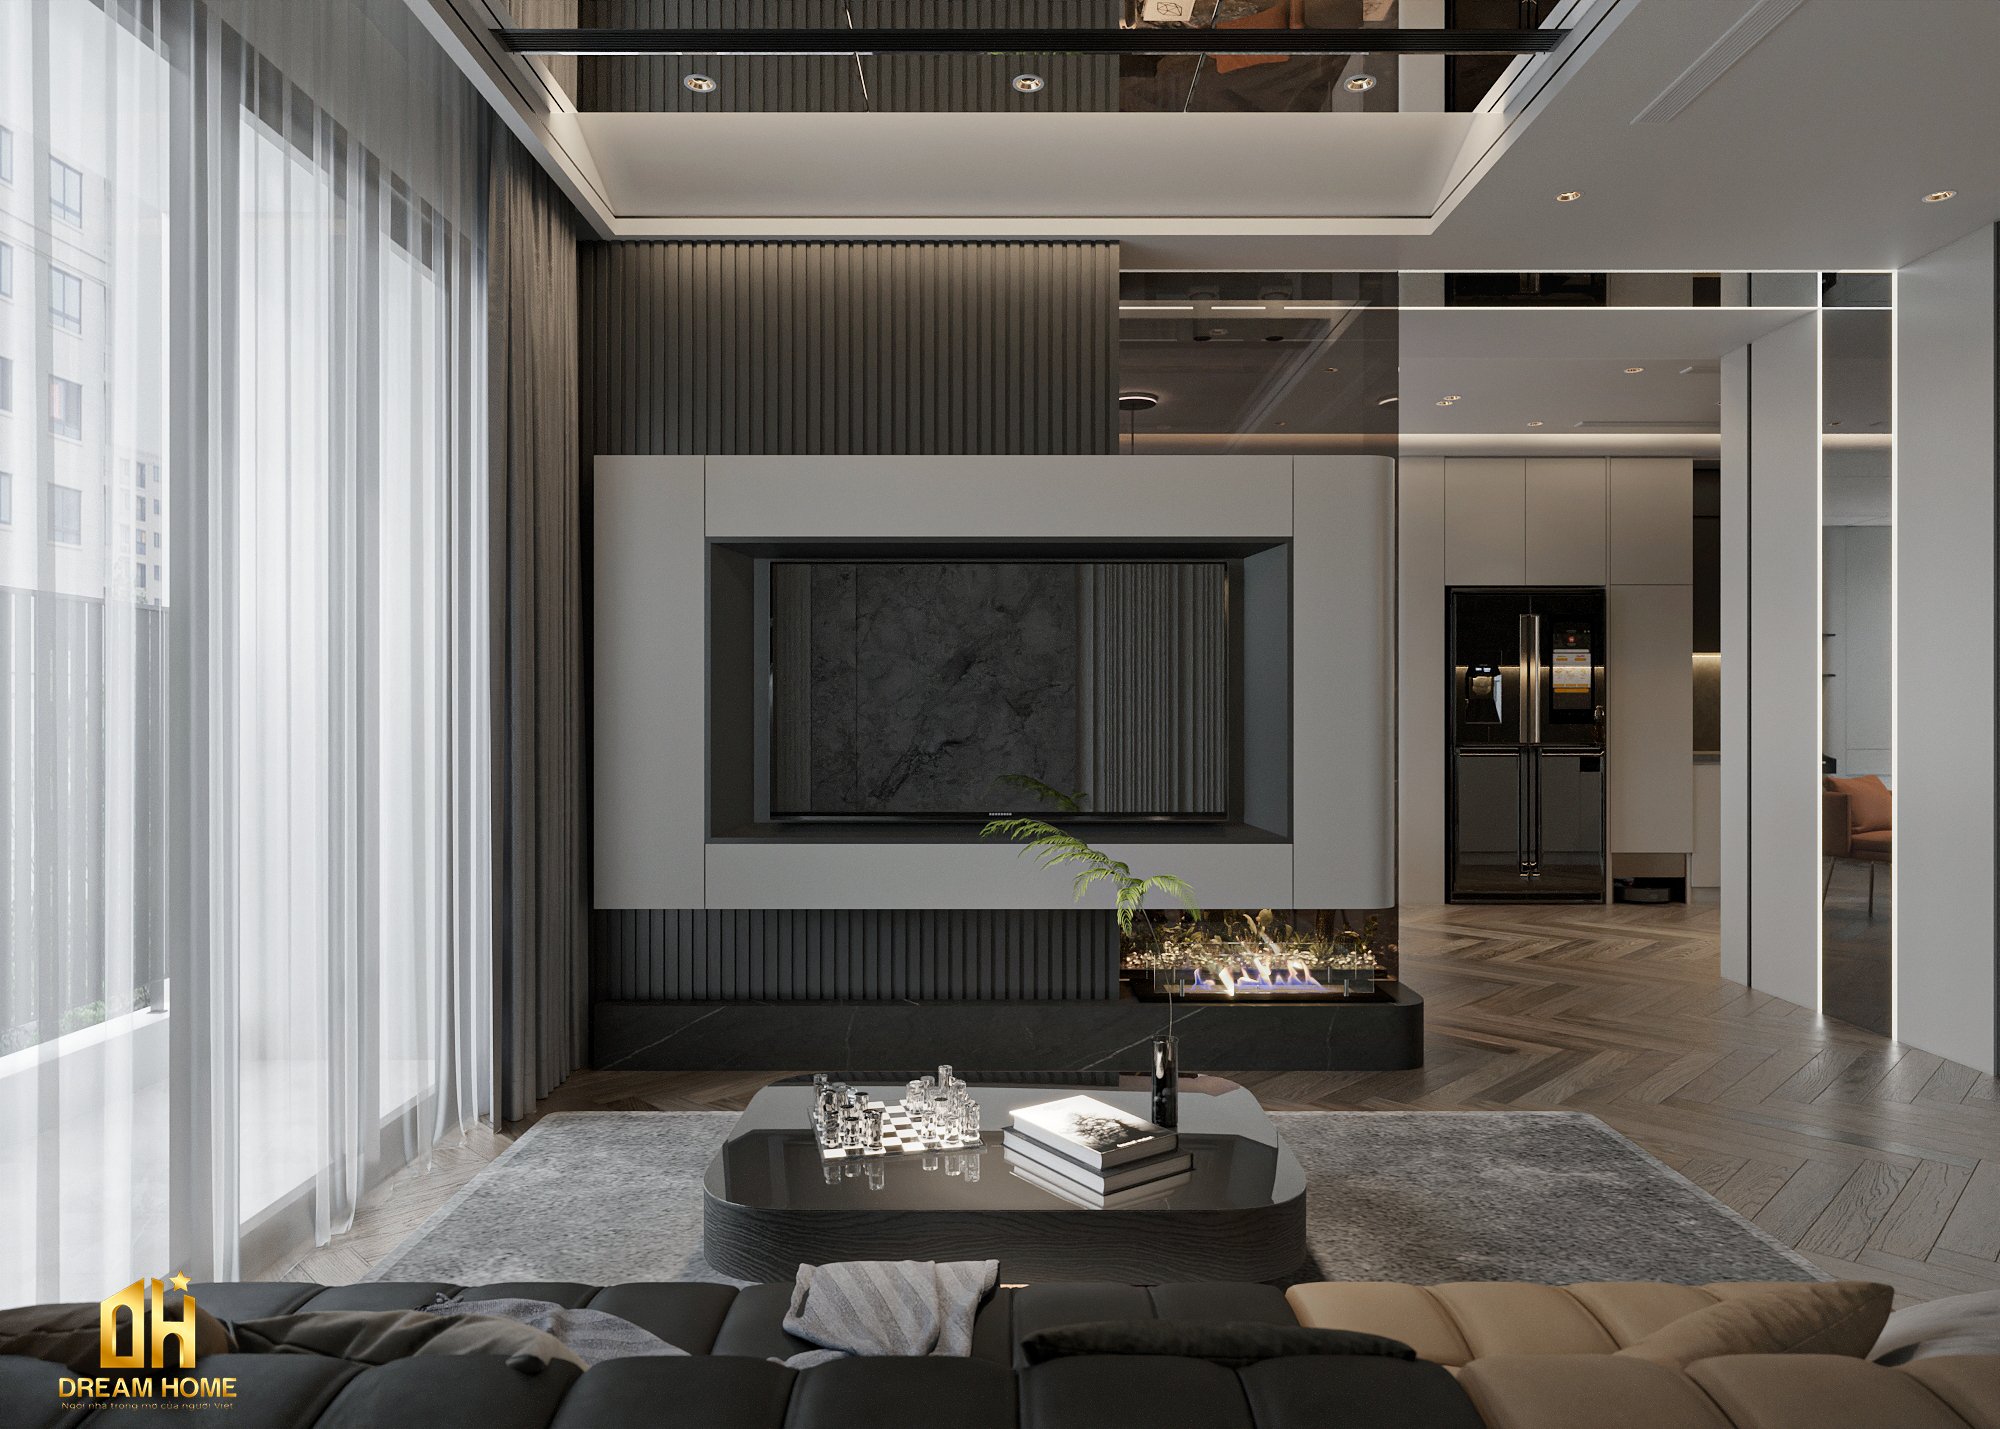 Không gian phòng khách được thiết kế nội thất một cách tỉ mỉ và tinh tế.